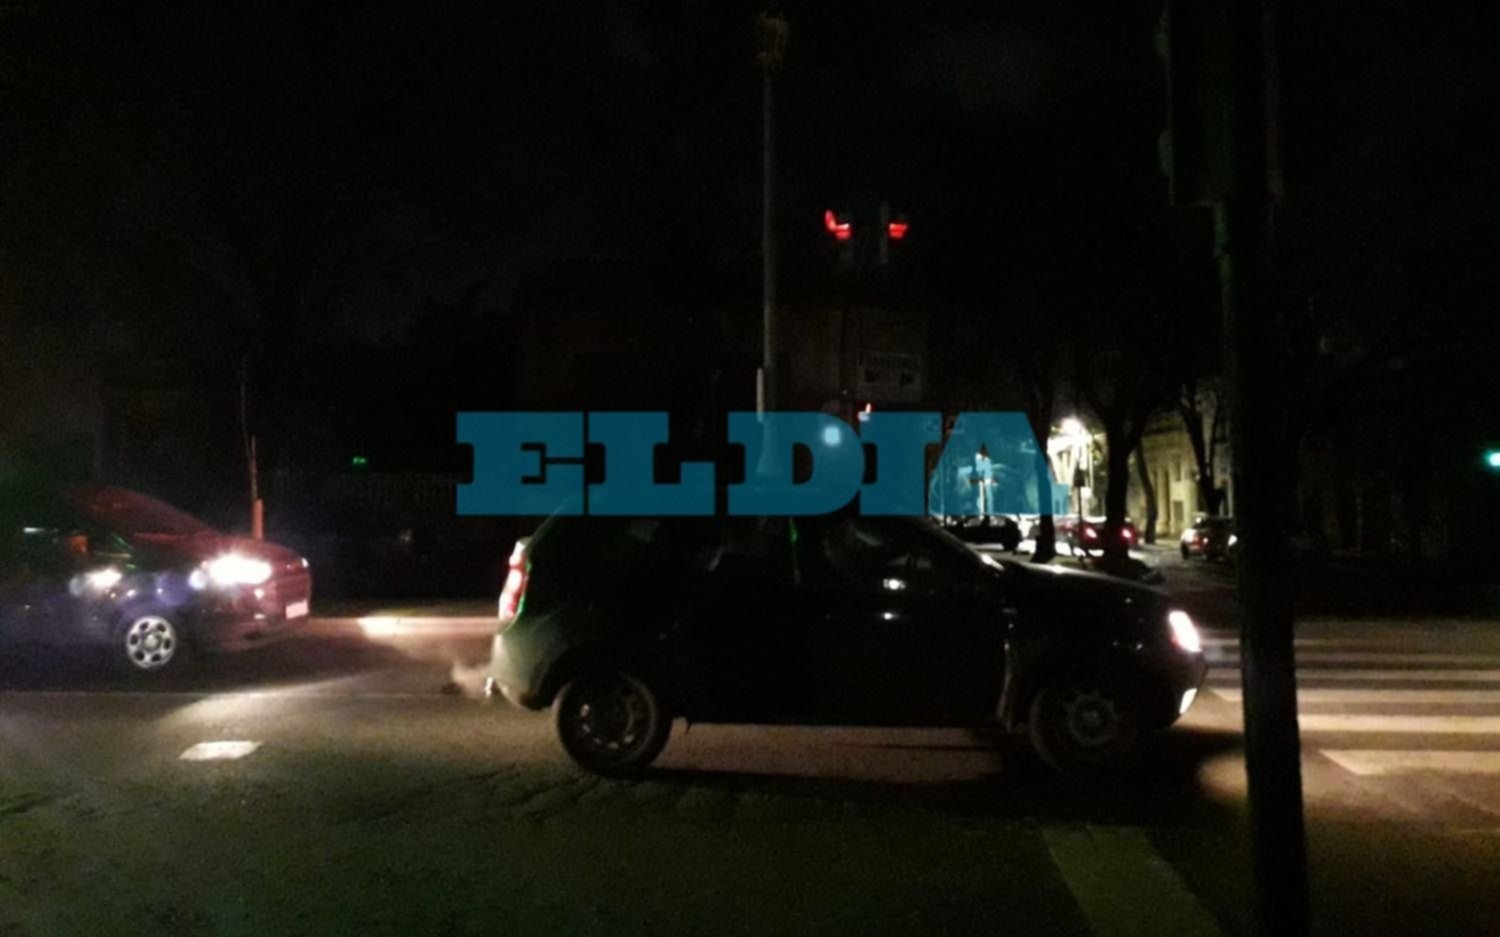 Más bronca contra Edelap en La Plata: viernes con quejas por cortes de luz y alta tensión en distintos barrios